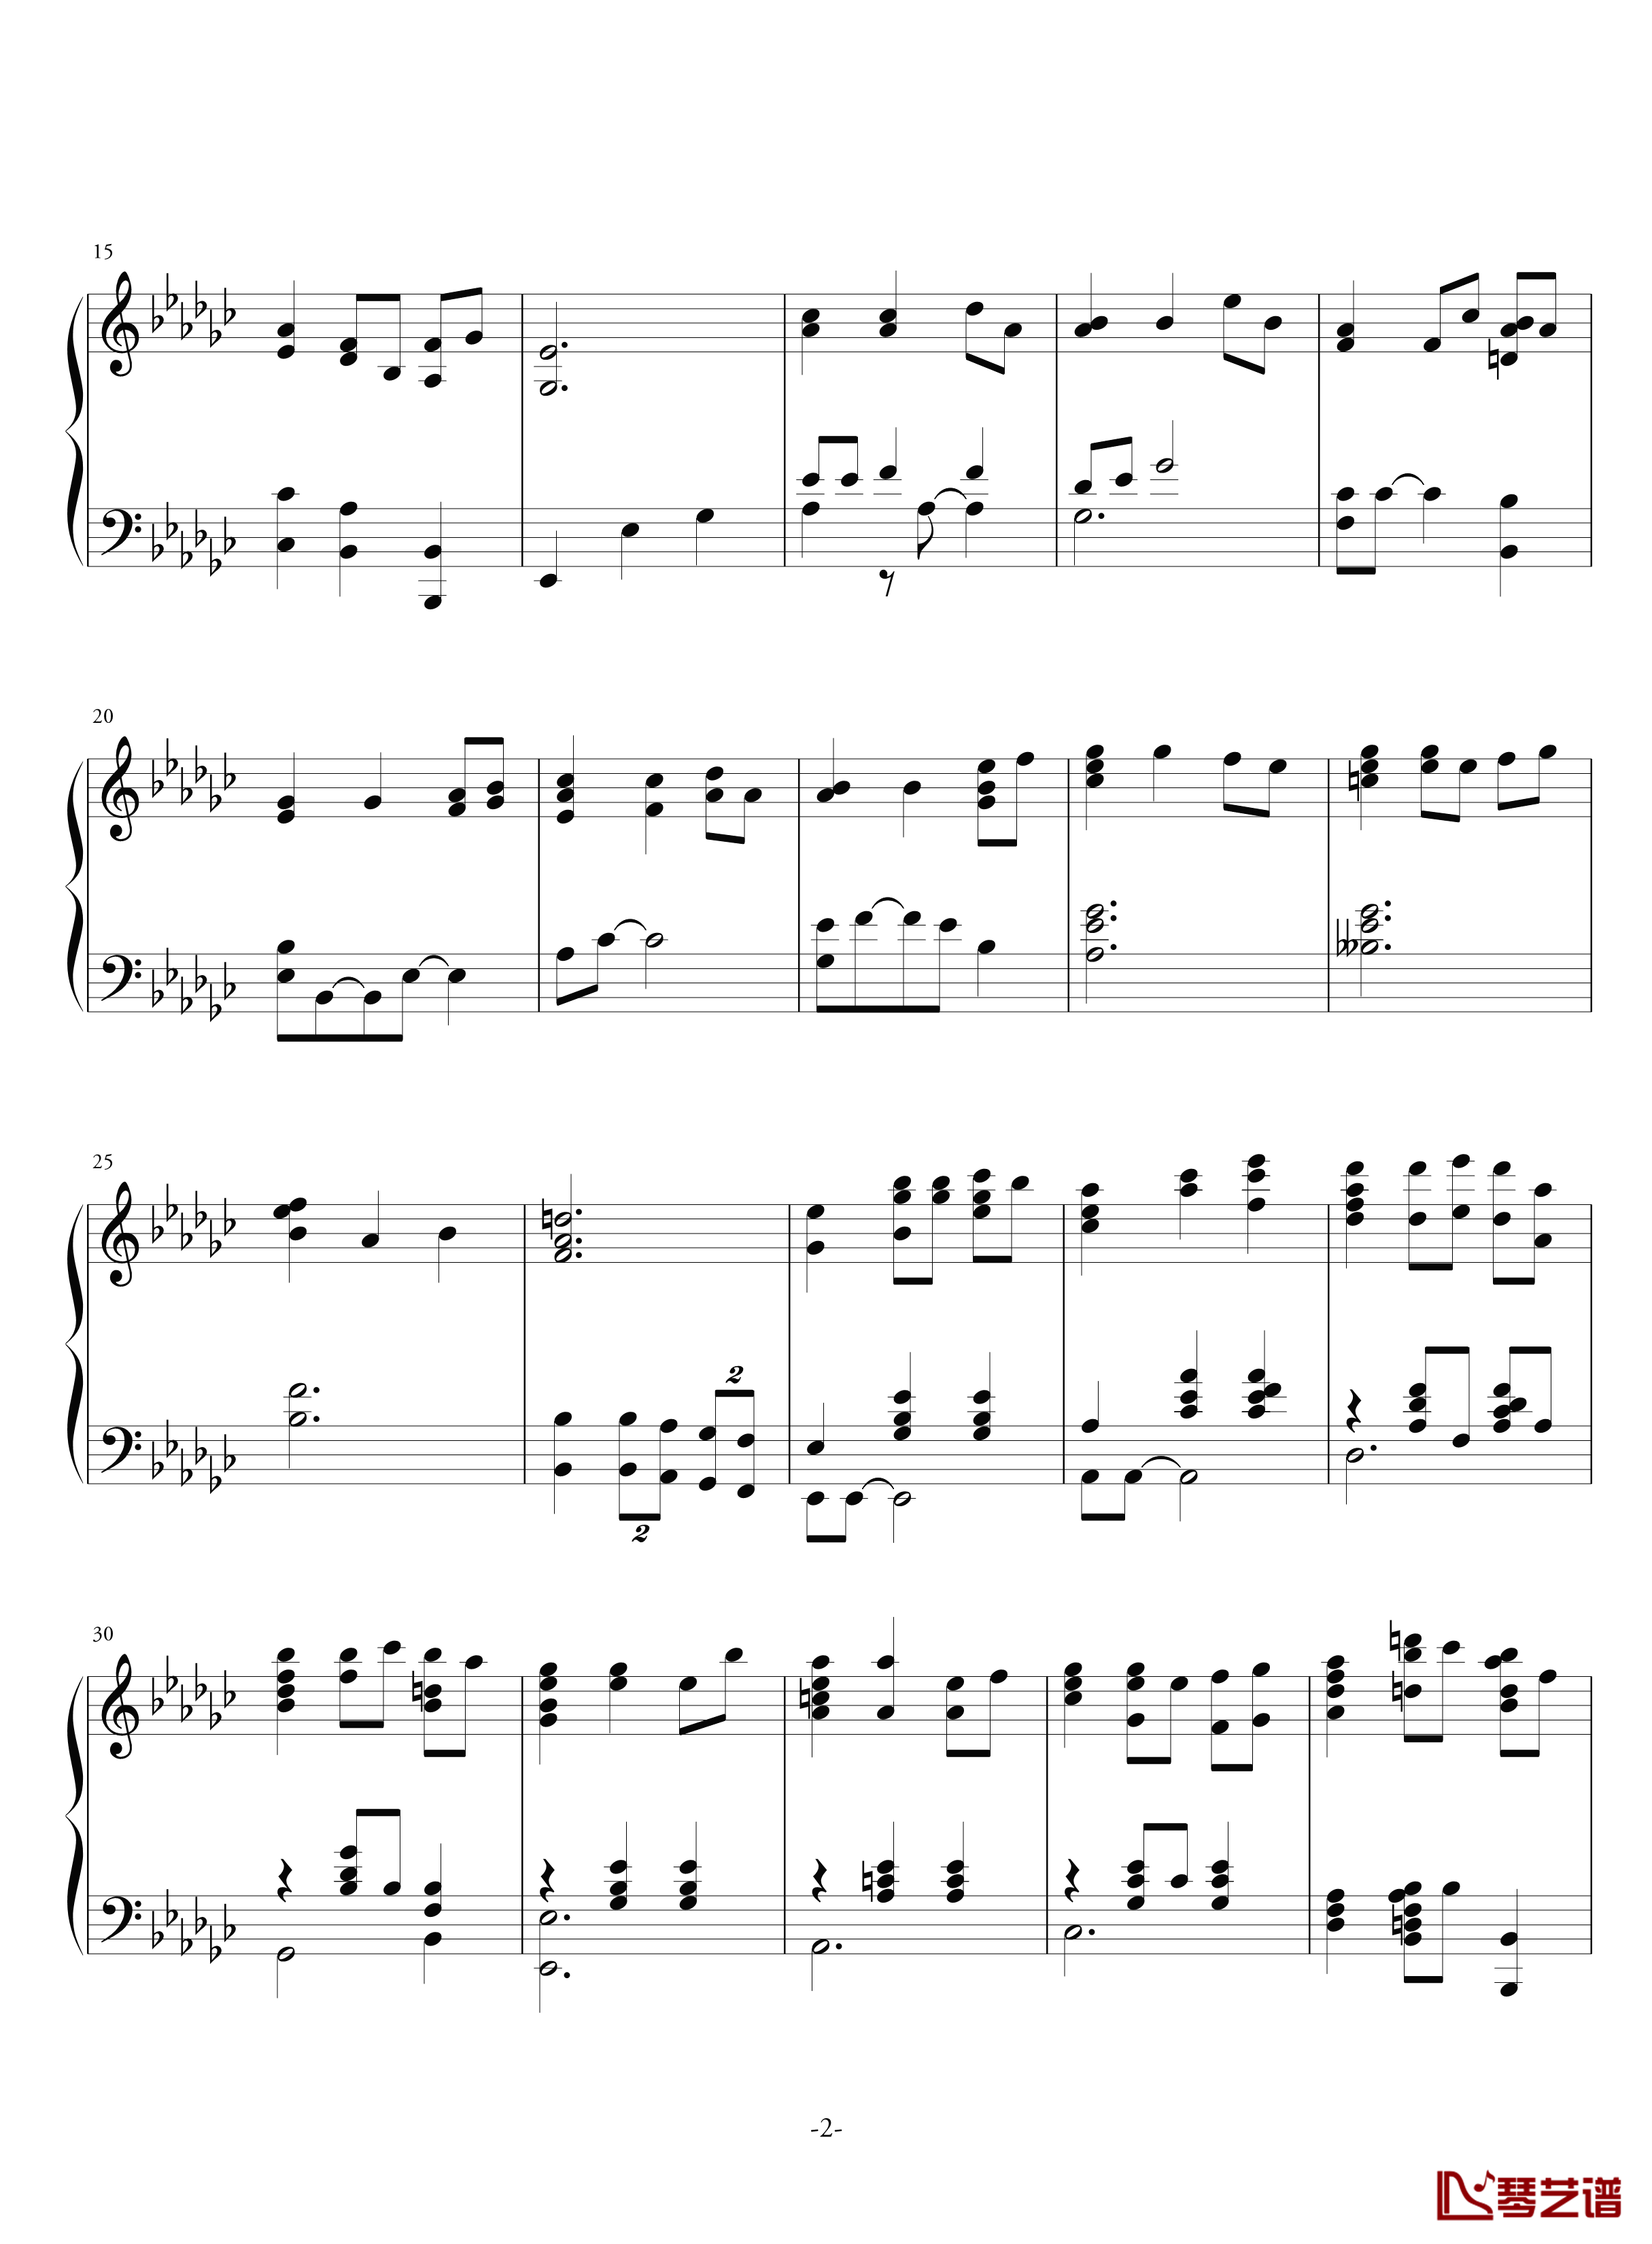 空心人偶的游乐园钢琴谱-反-aqtq314-白蔷薇组曲⒊2